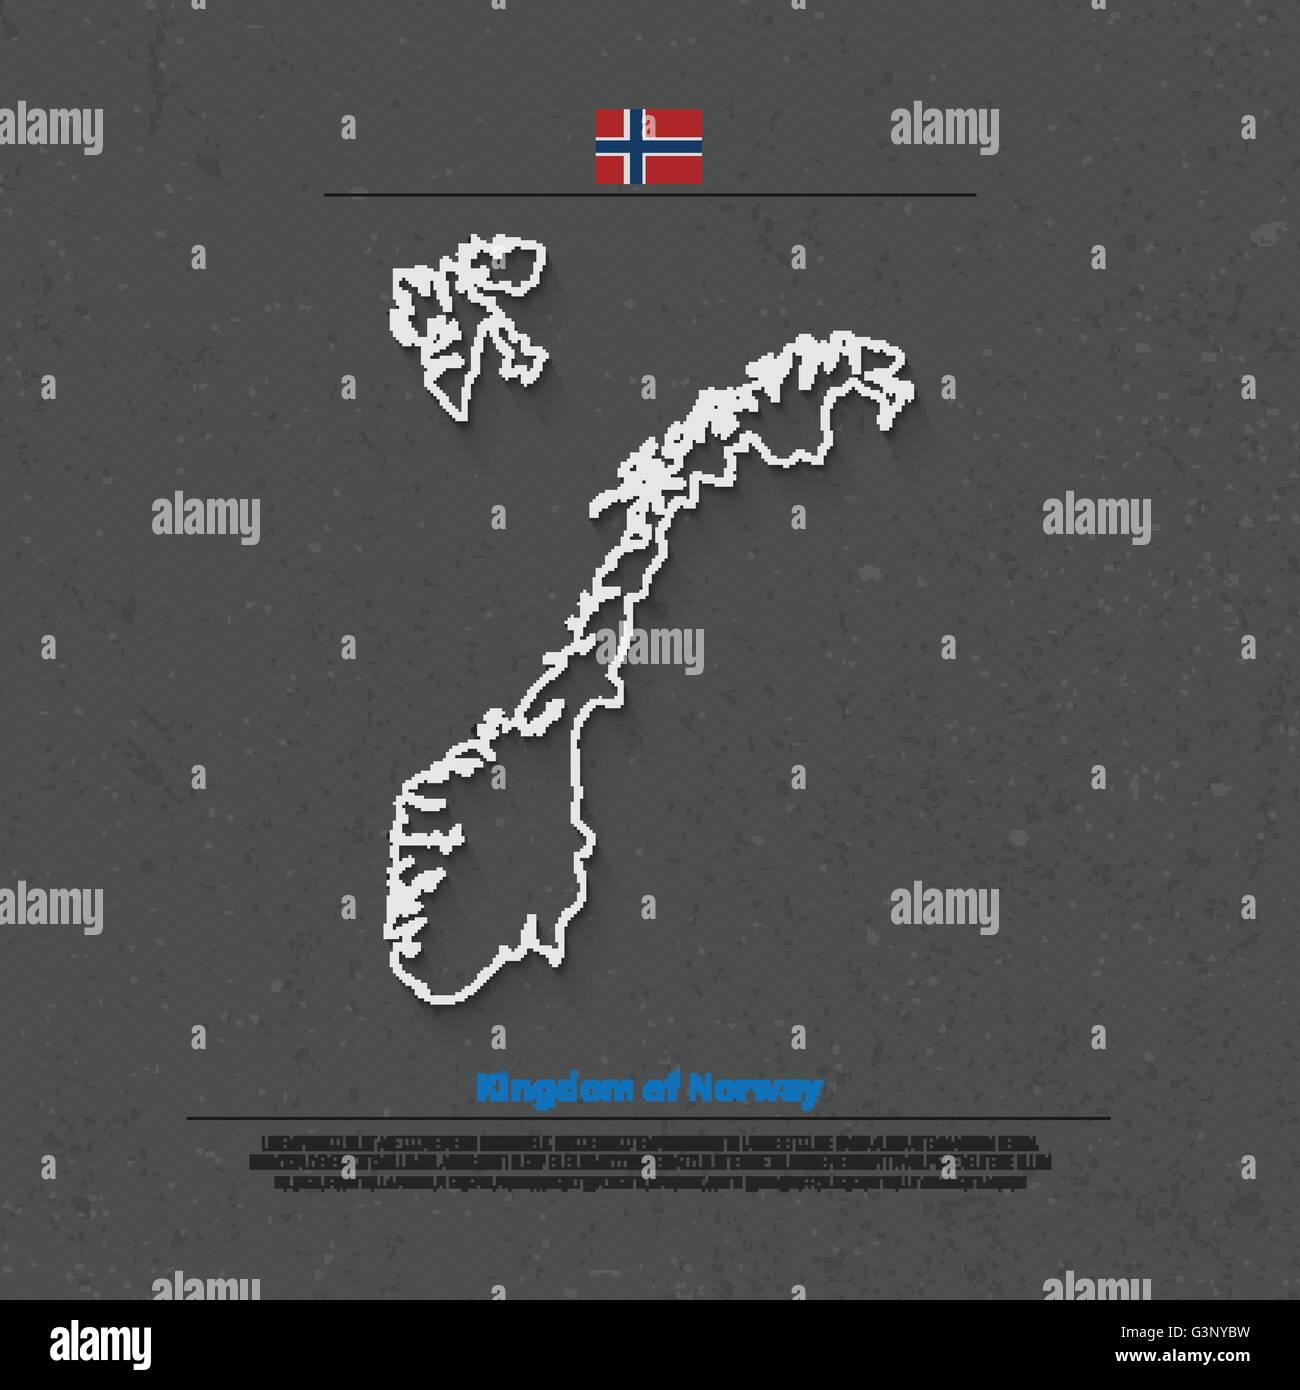 Königreich Norwegen isoliert Karte und offizielle Flaggen-Icons. Vektor-norwegische politische Kartensymbol dünne Linie. Skandinavische Land geog Stock Vektor